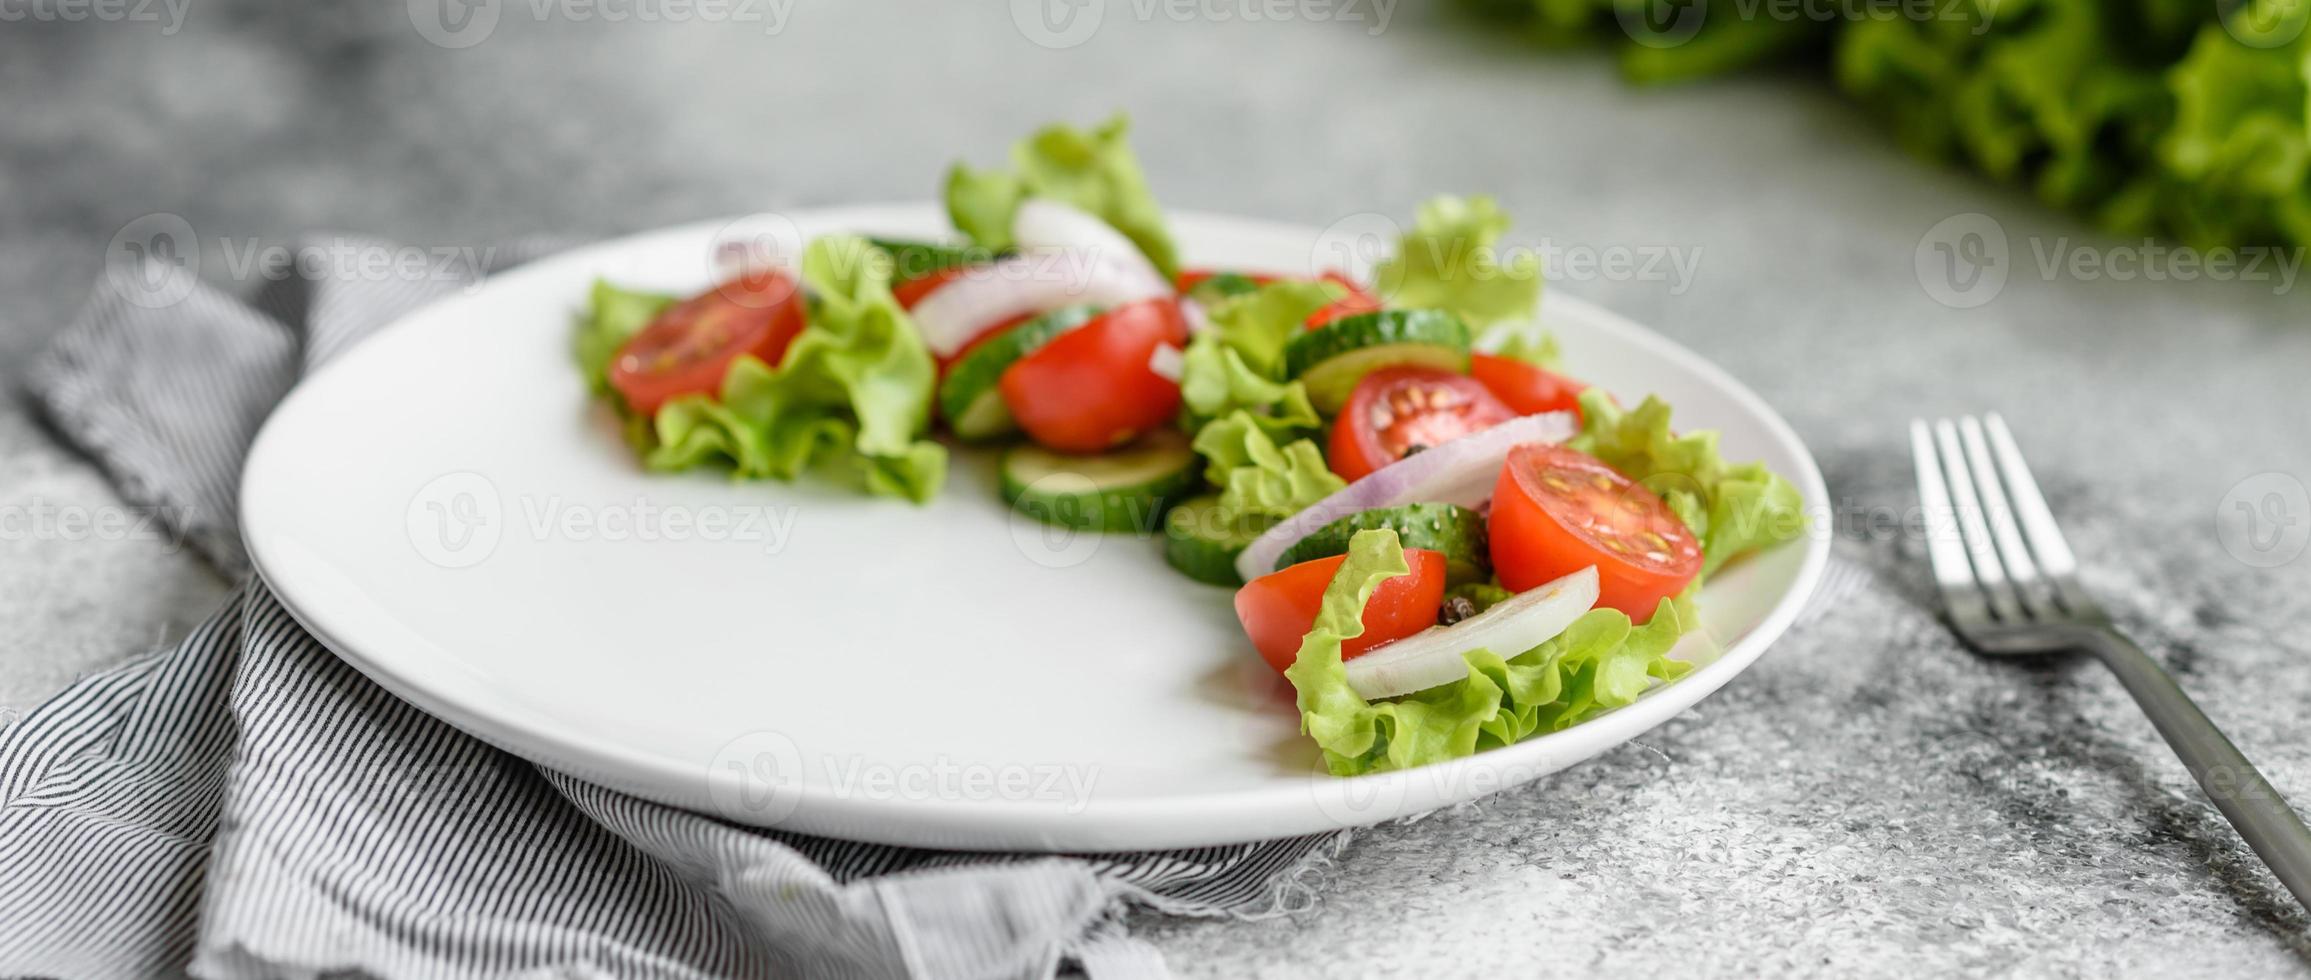 deliciosa ensalada fresca con verduras foto